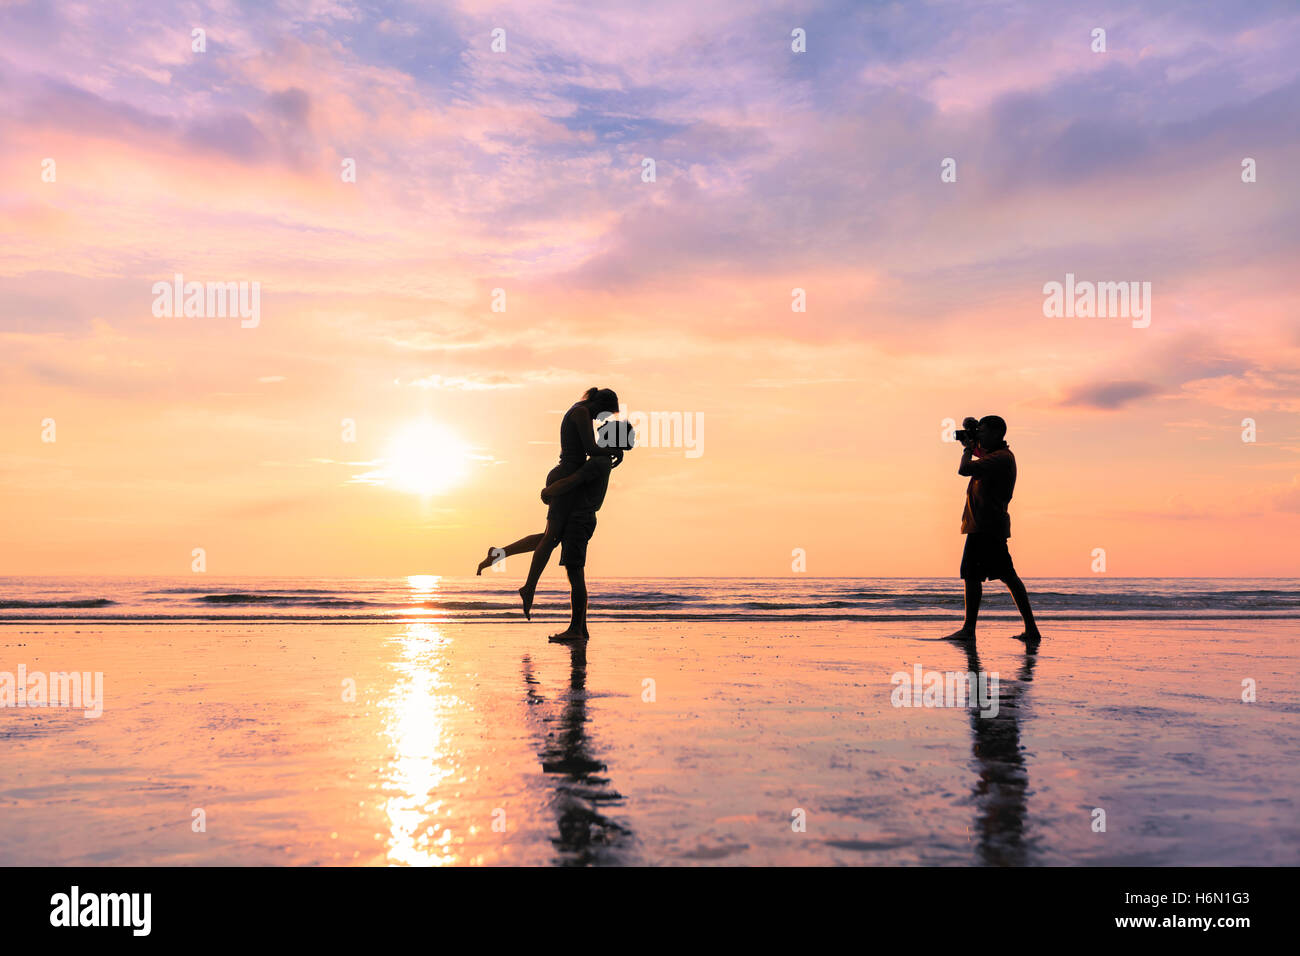 Fotografo di prendere foto di una coppia baciare sulla spiaggia durante il tramonto - Concetto di viaggi romantici e luna di miele Foto Stock